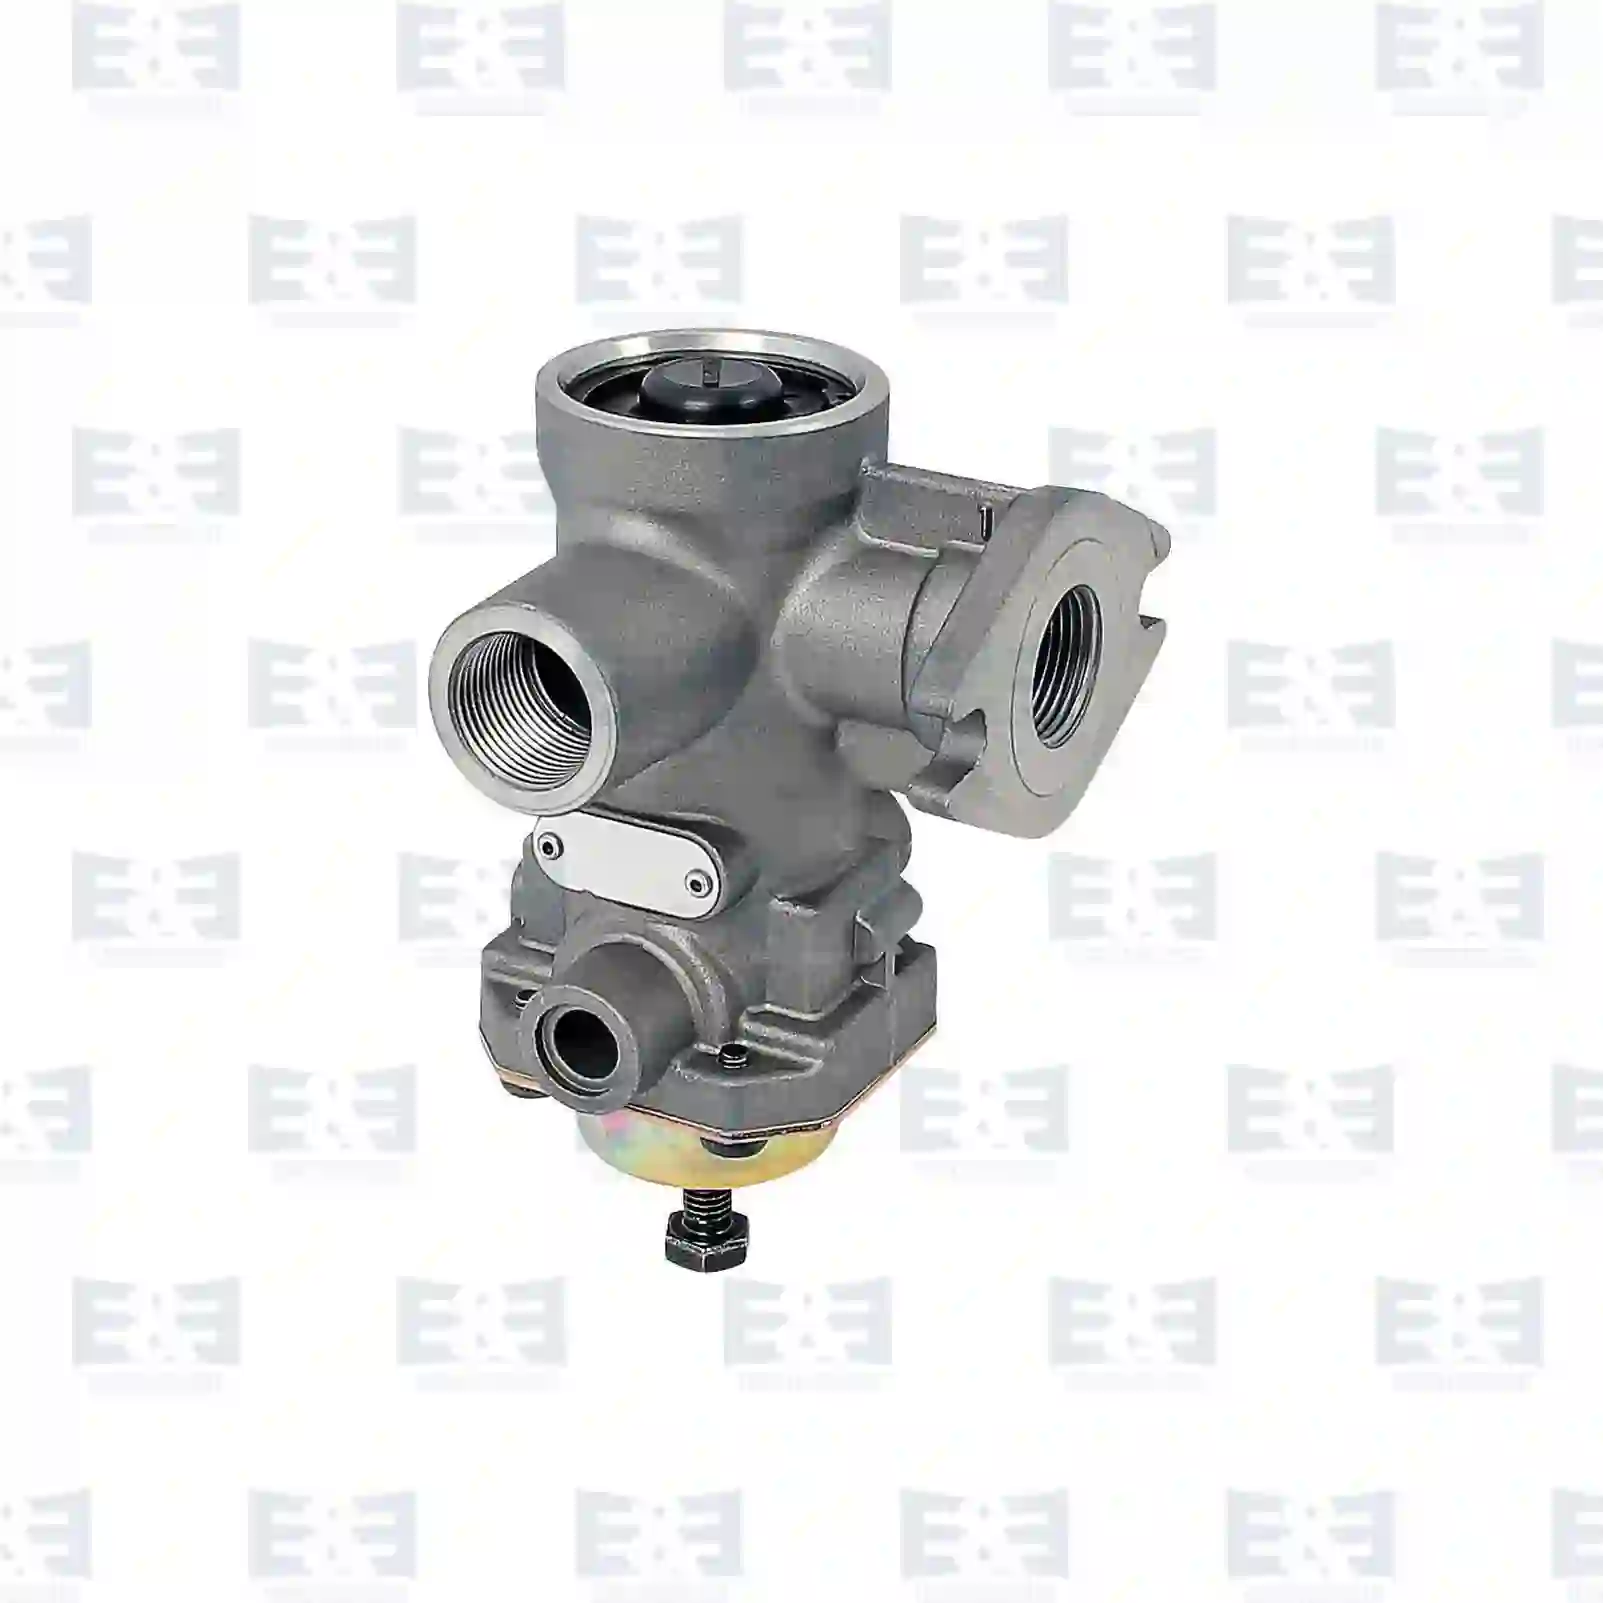  Pressure limiting valve || E&E Truck Spare Parts | Truck Spare Parts, Auotomotive Spare Parts